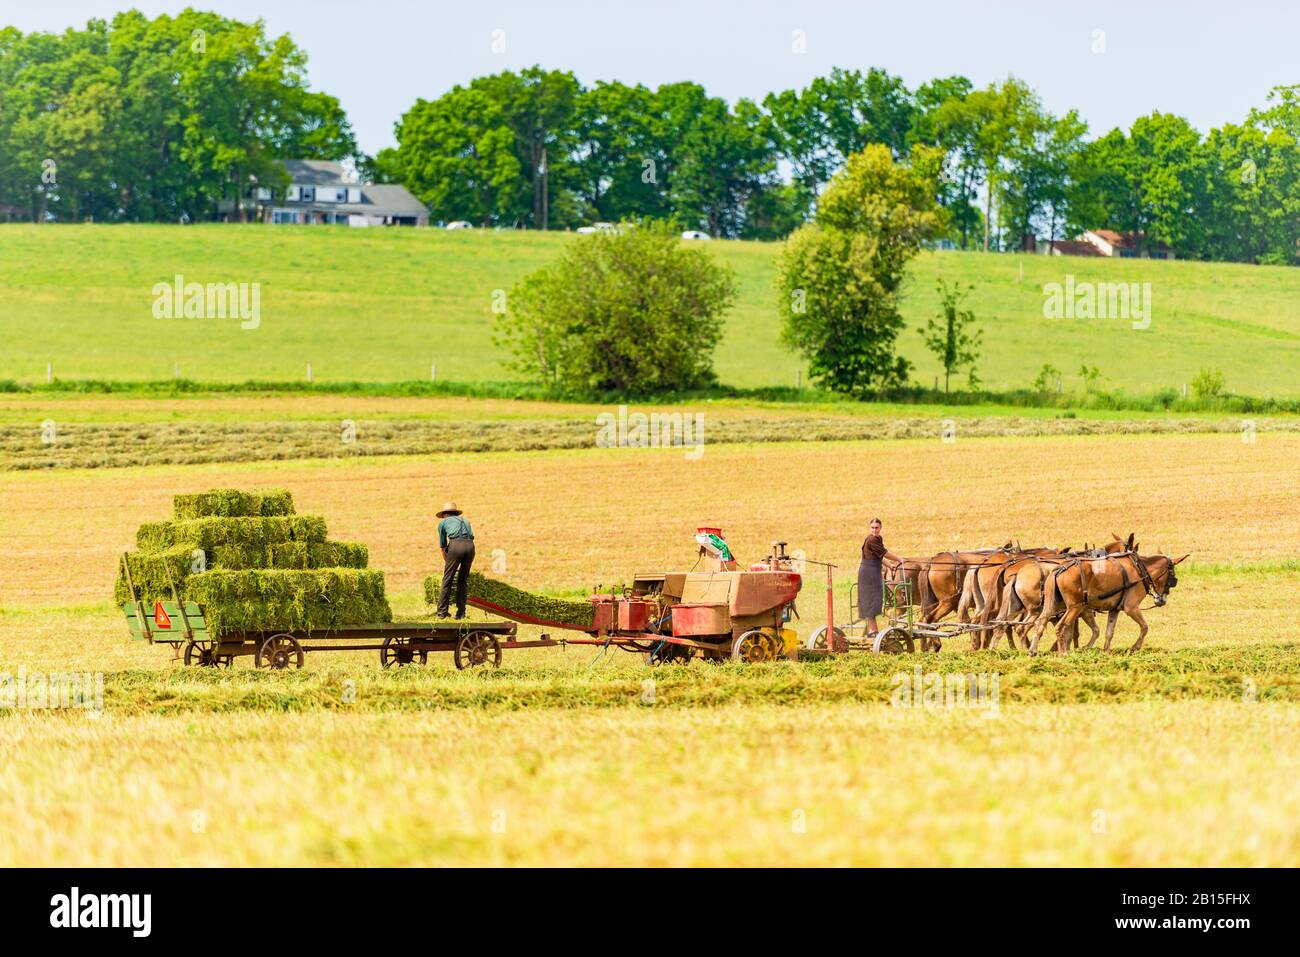 Amish homme et femme pressent du foin dans un champ en Pennsylvanie Etats-Unis Banque D'Images